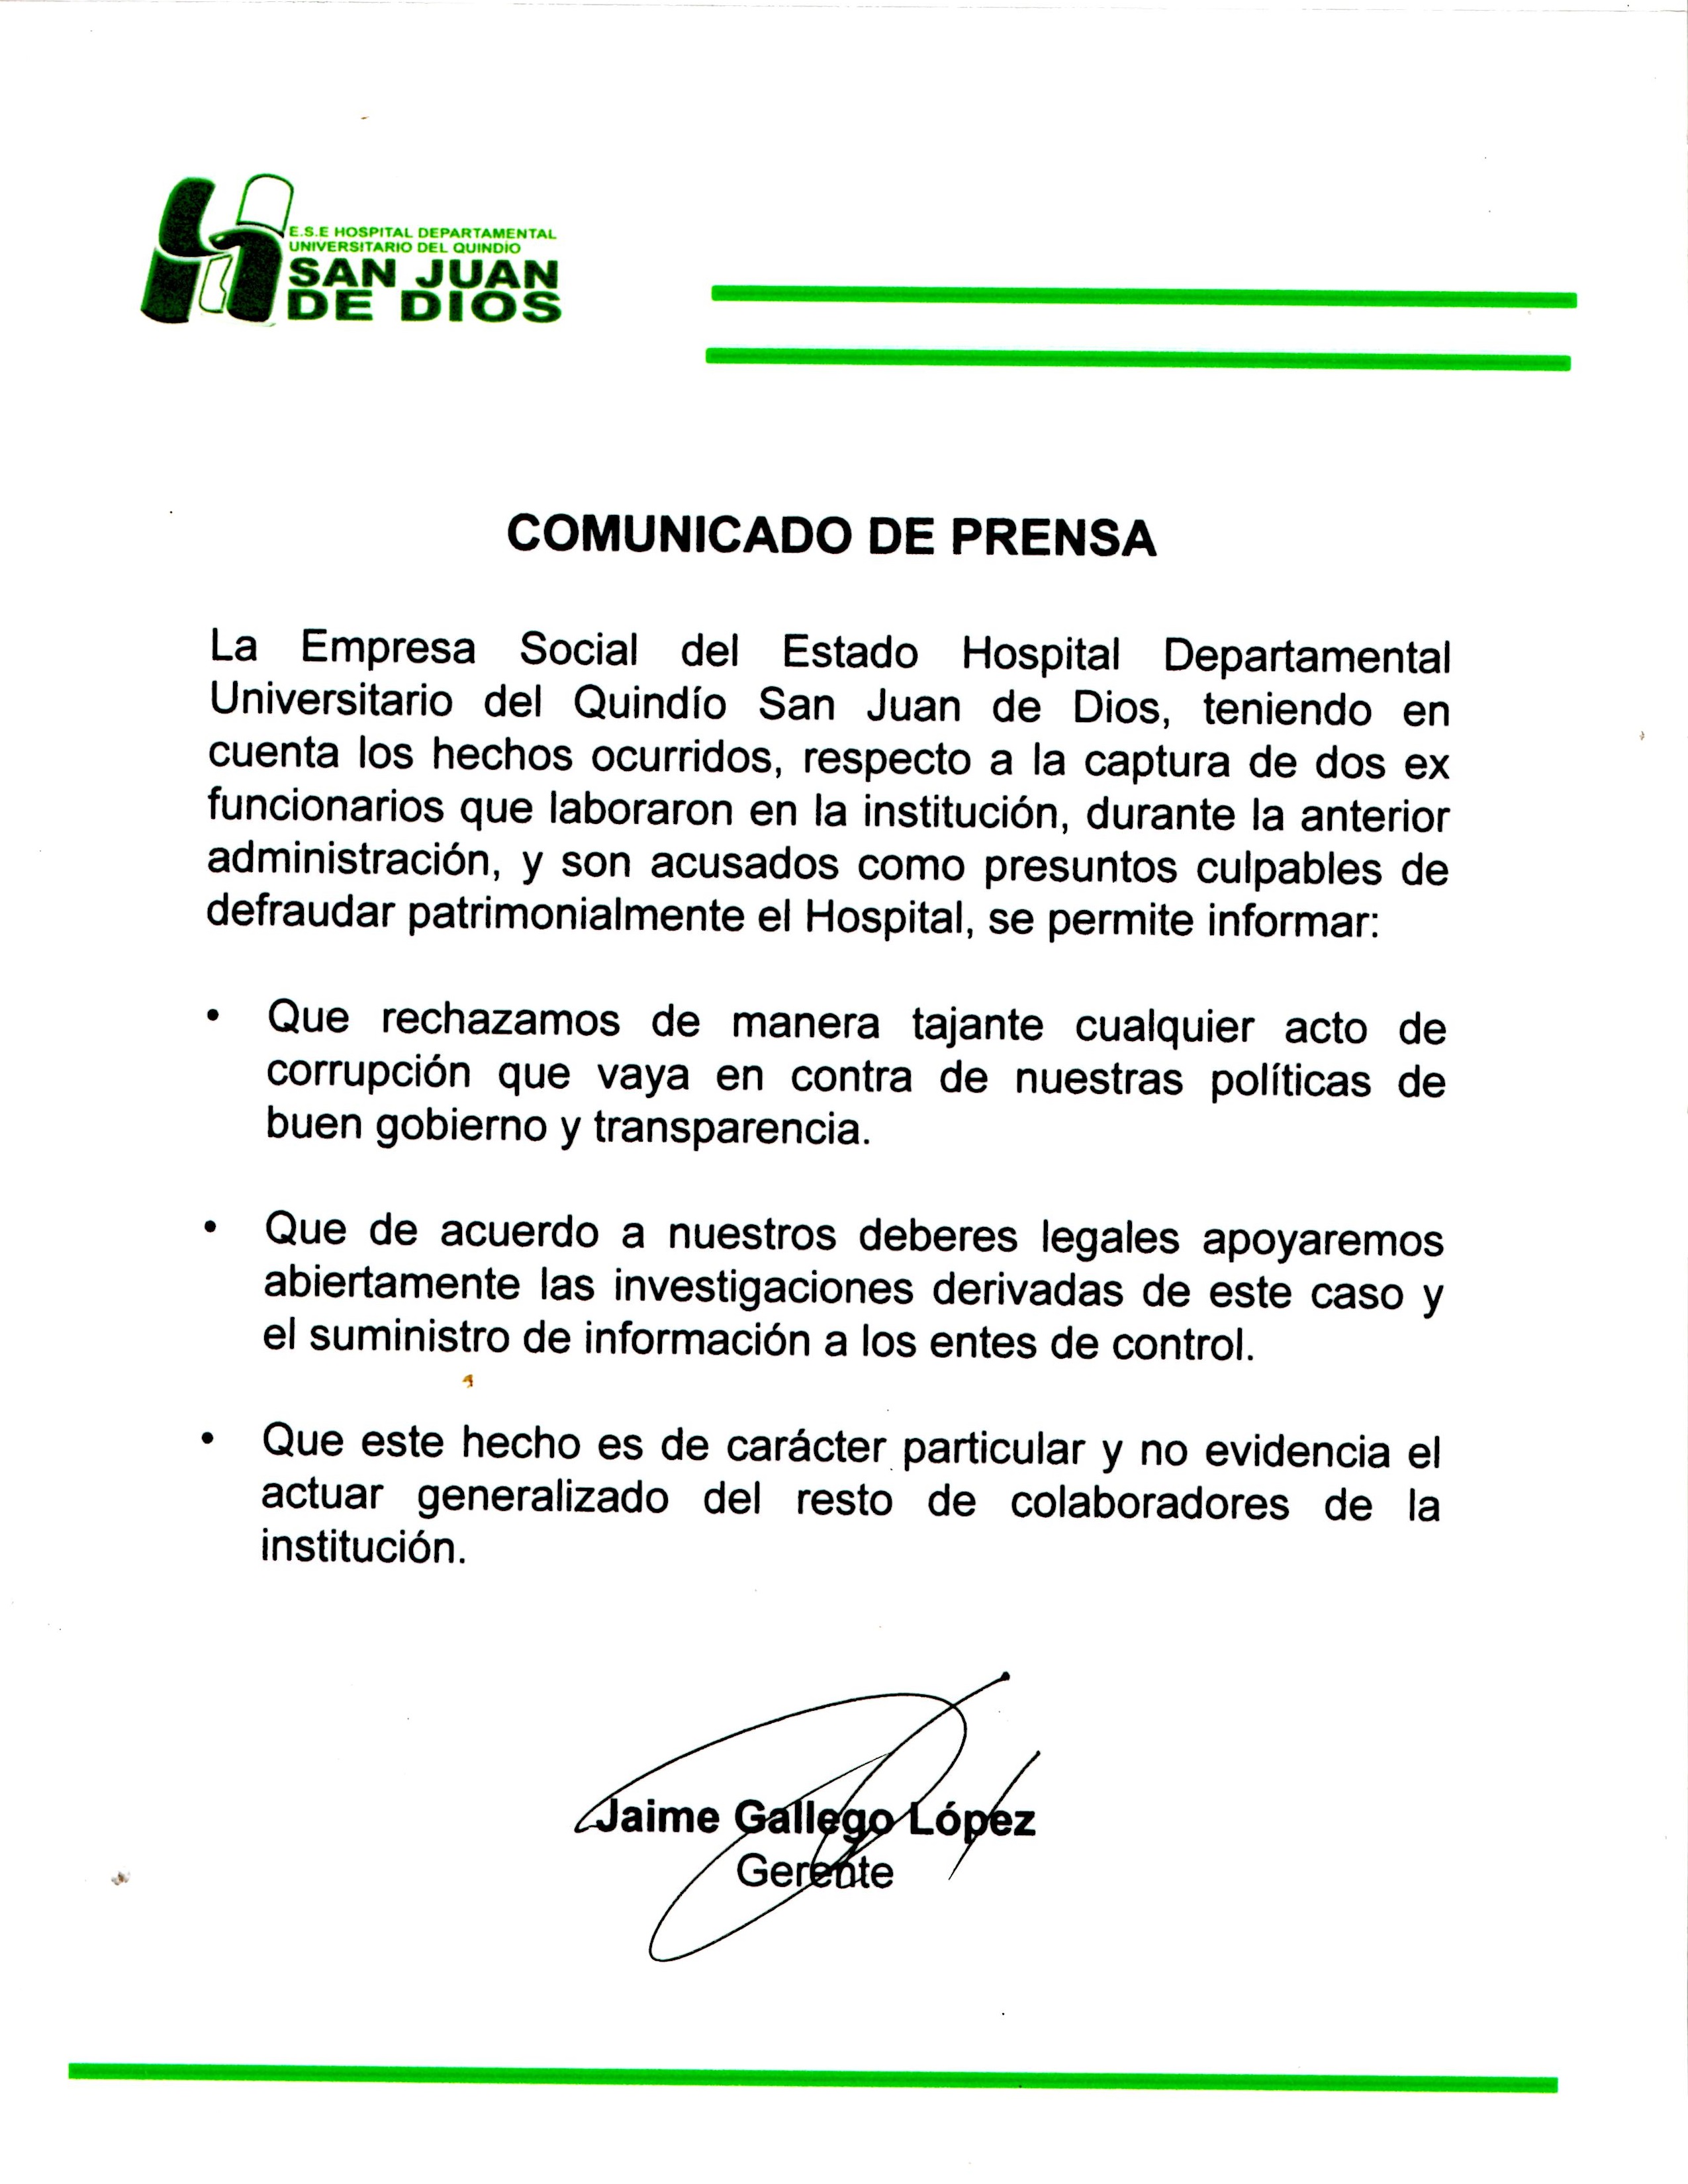 Comunicado de prensa del Hospital Departamental Universitario del Quindío San Juan de Dios